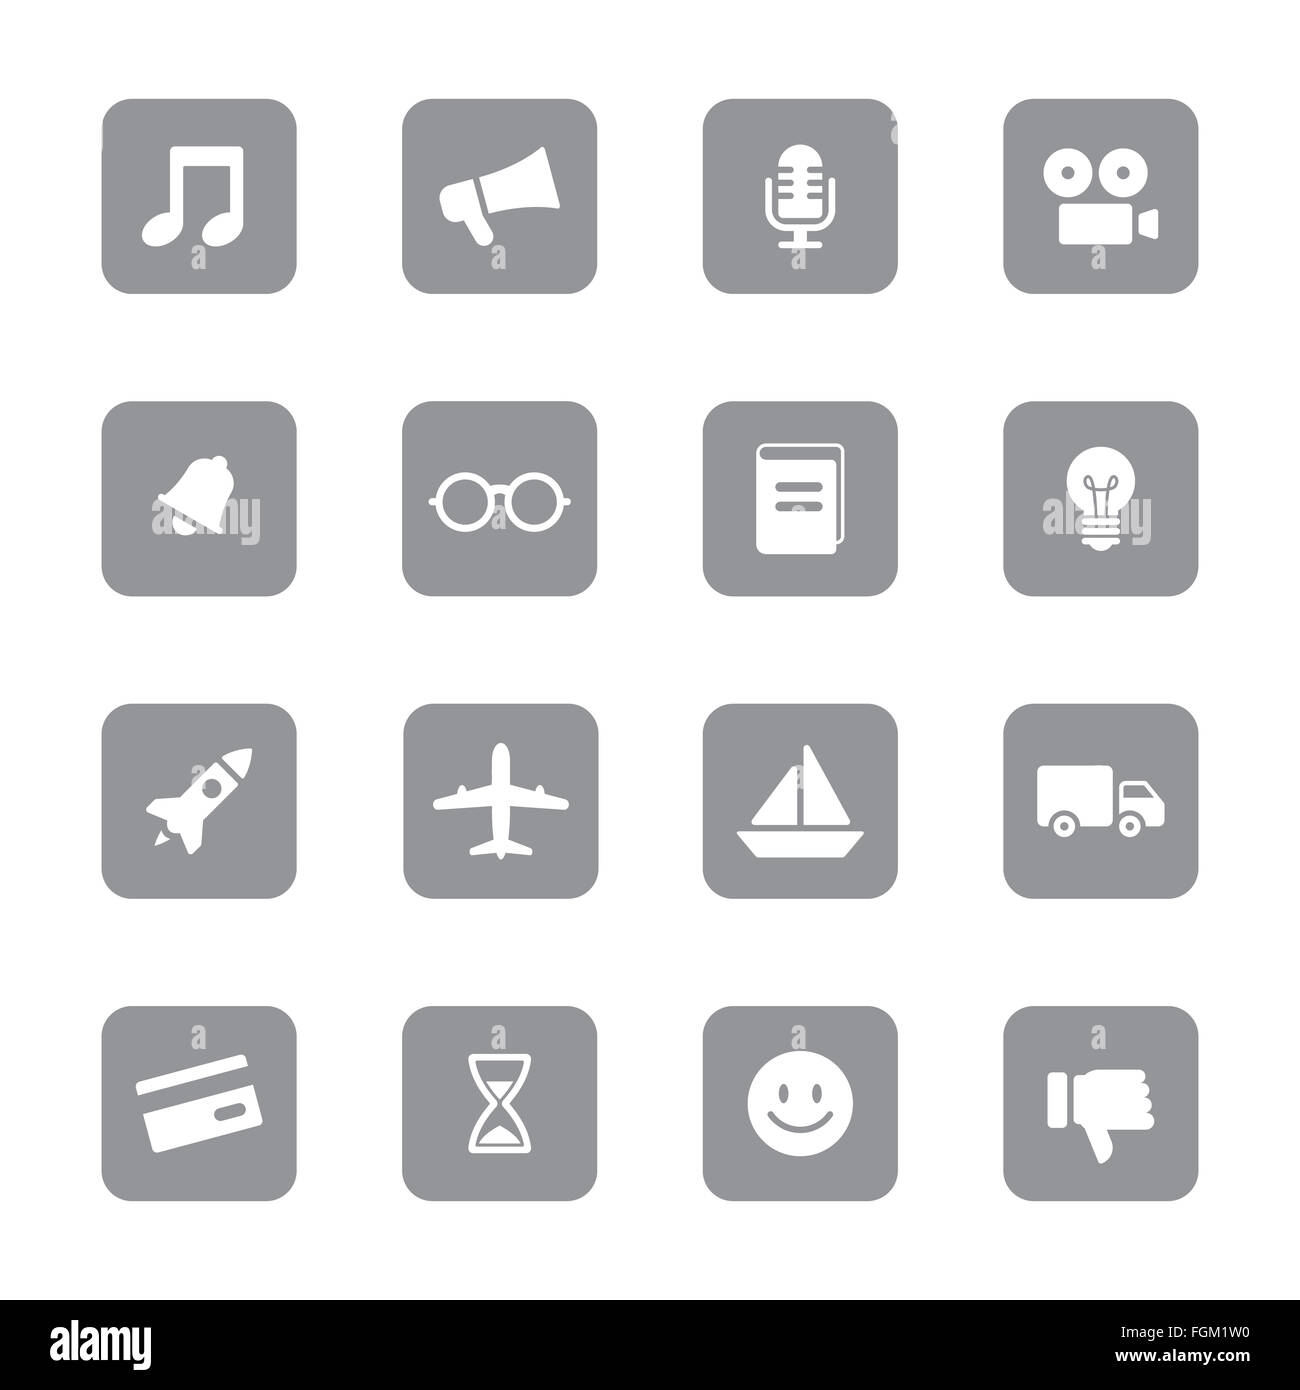 [JPEG] web icon set 5 gris sur rectangle arrondi pour le web design, l'interface utilisateur (IU), l'infographie et de l'application mobile (apps) Banque D'Images